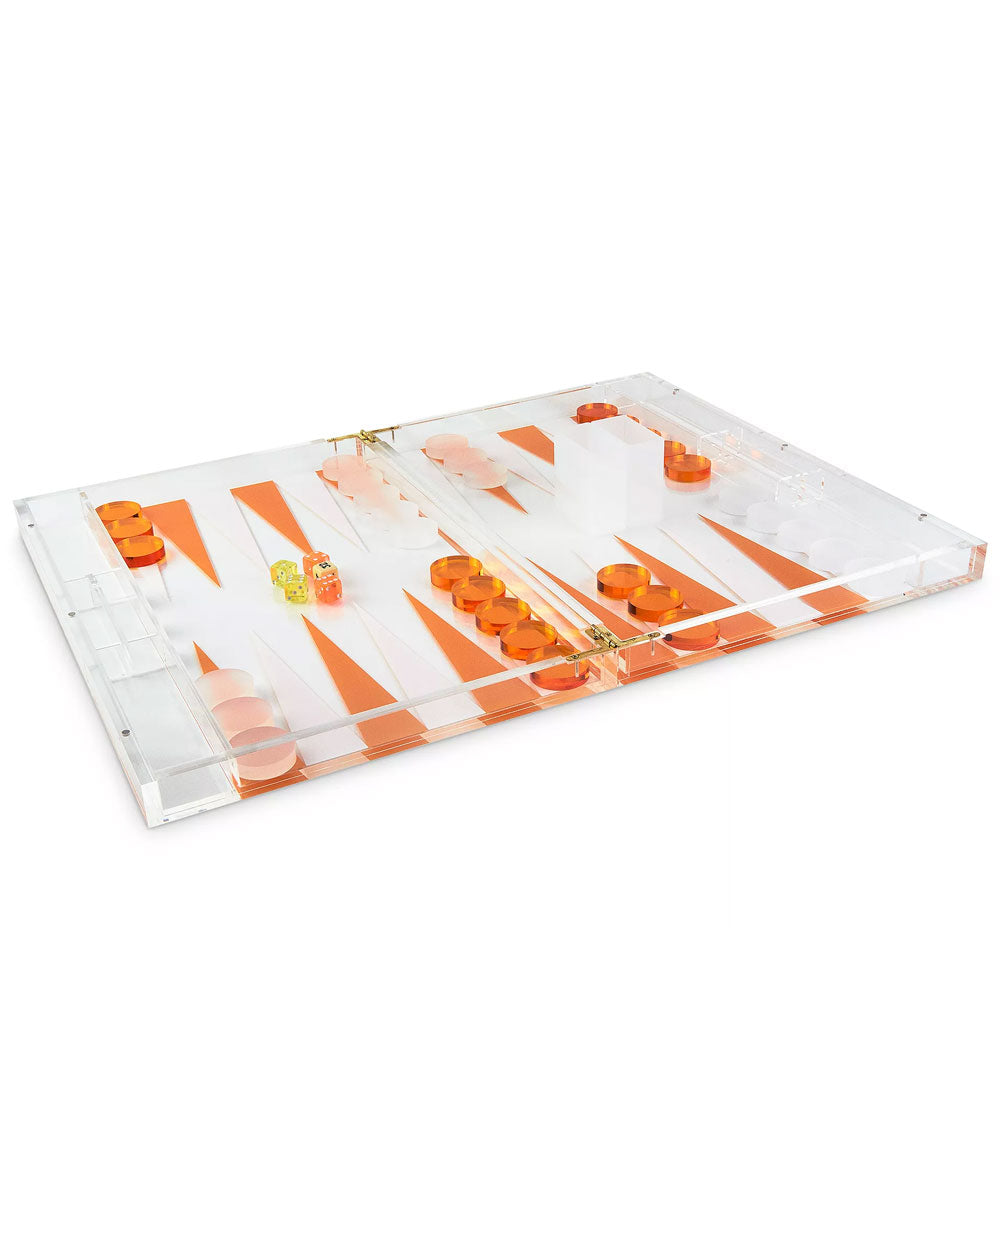 Orange Acrylic Backgammon Set